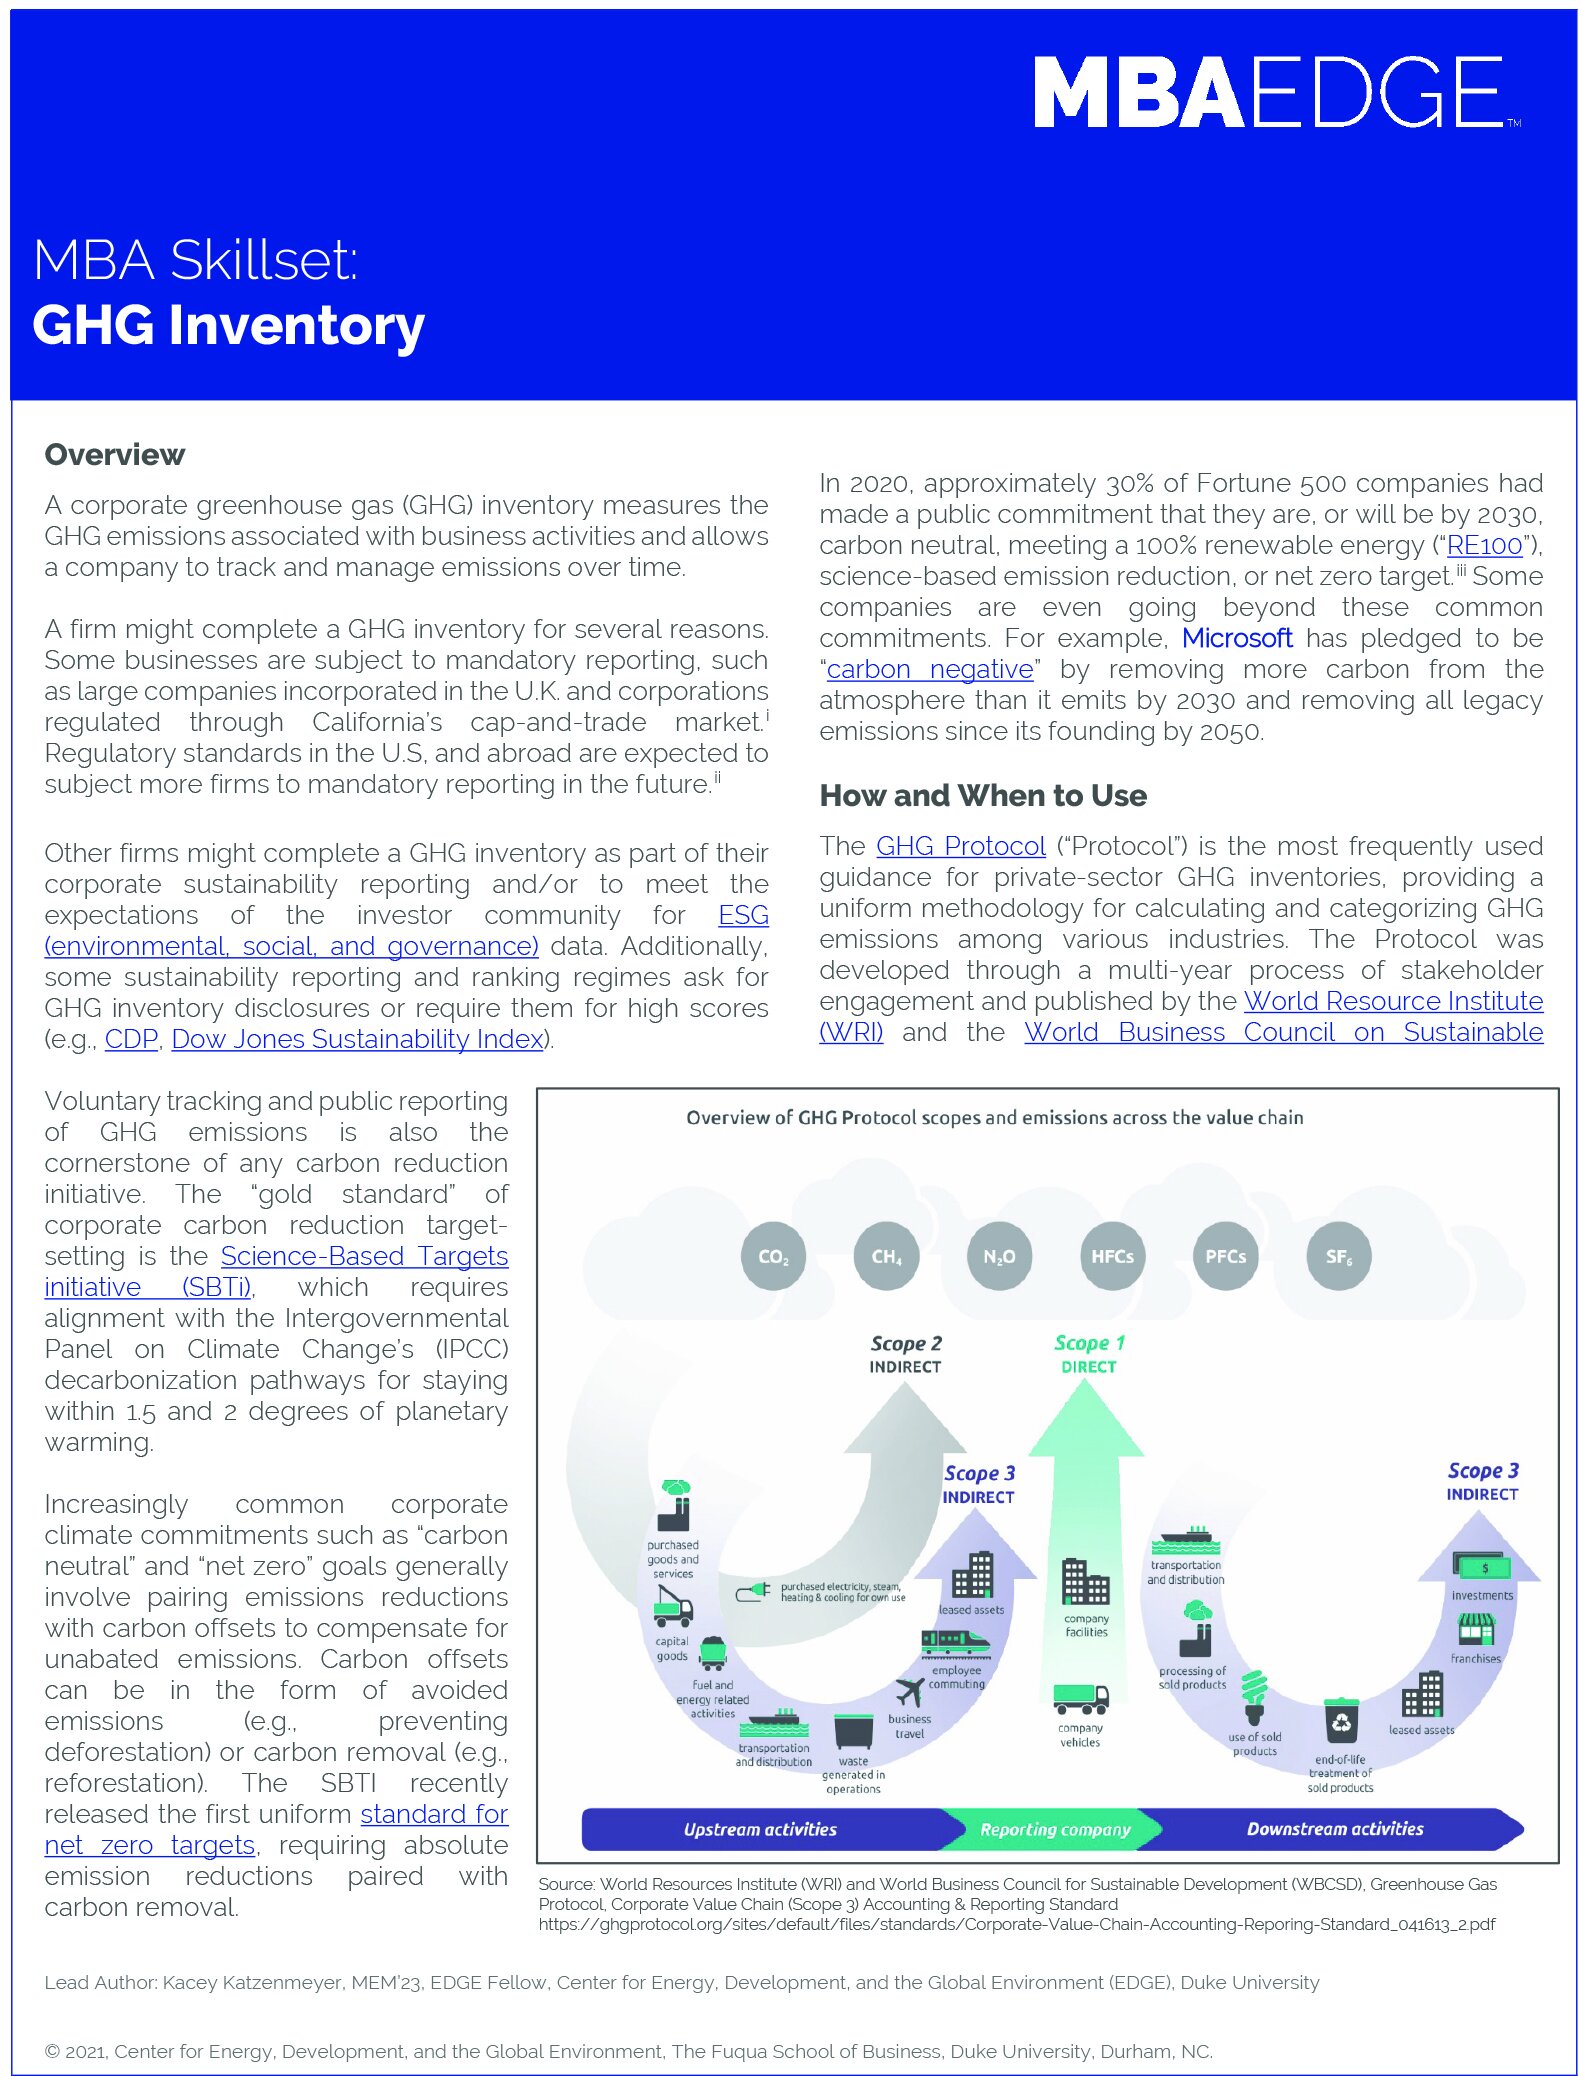 GHG Inventory